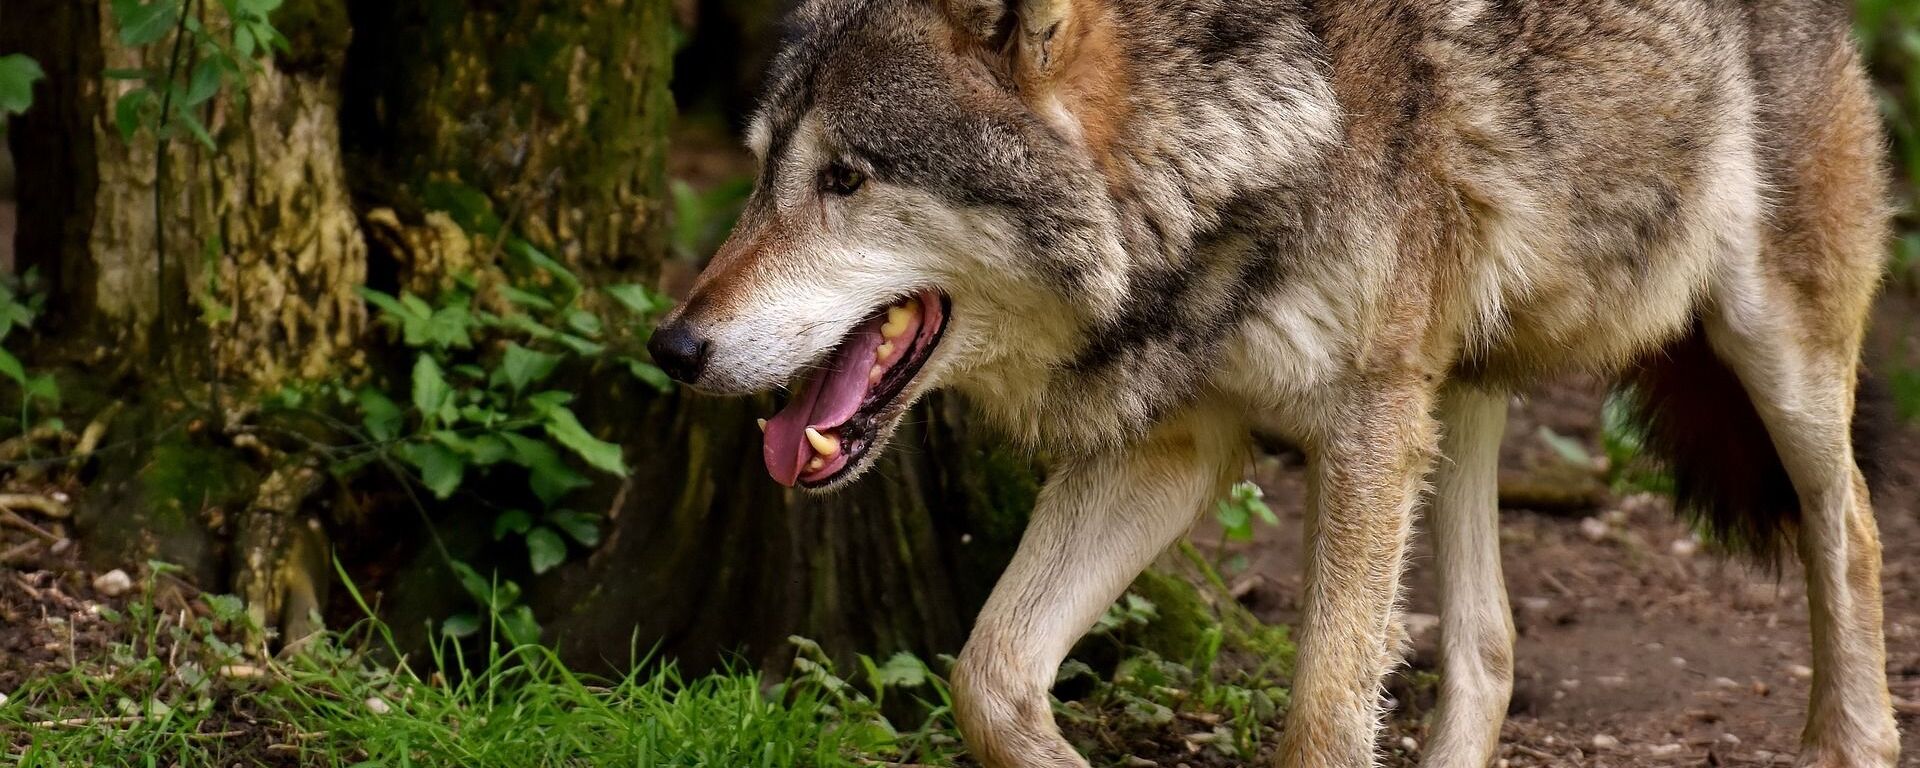 Волк в лесу - Sputnik Грузия, 1920, 20.05.2021